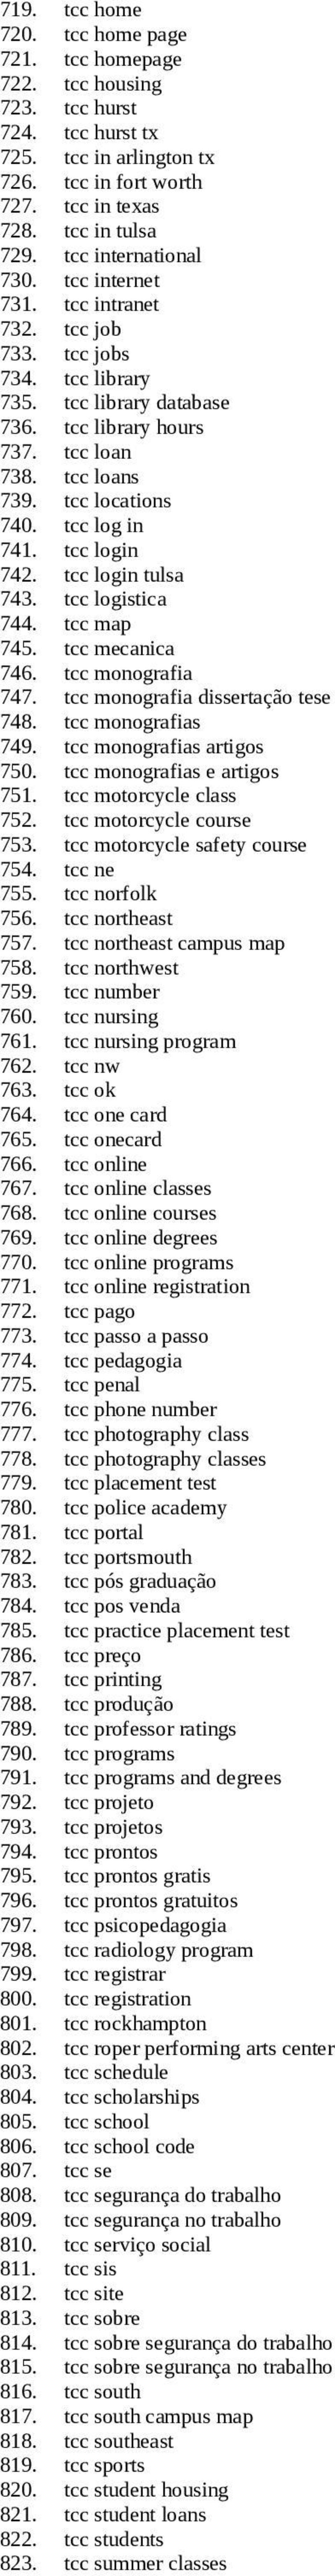 tcc log in 741. tcc login 742. tcc login tulsa 743. tcc logistica 744. tcc map 745. tcc mecanica 746. tcc monografia 747. tcc monografia dissertação tese 748. tcc monografias 749.